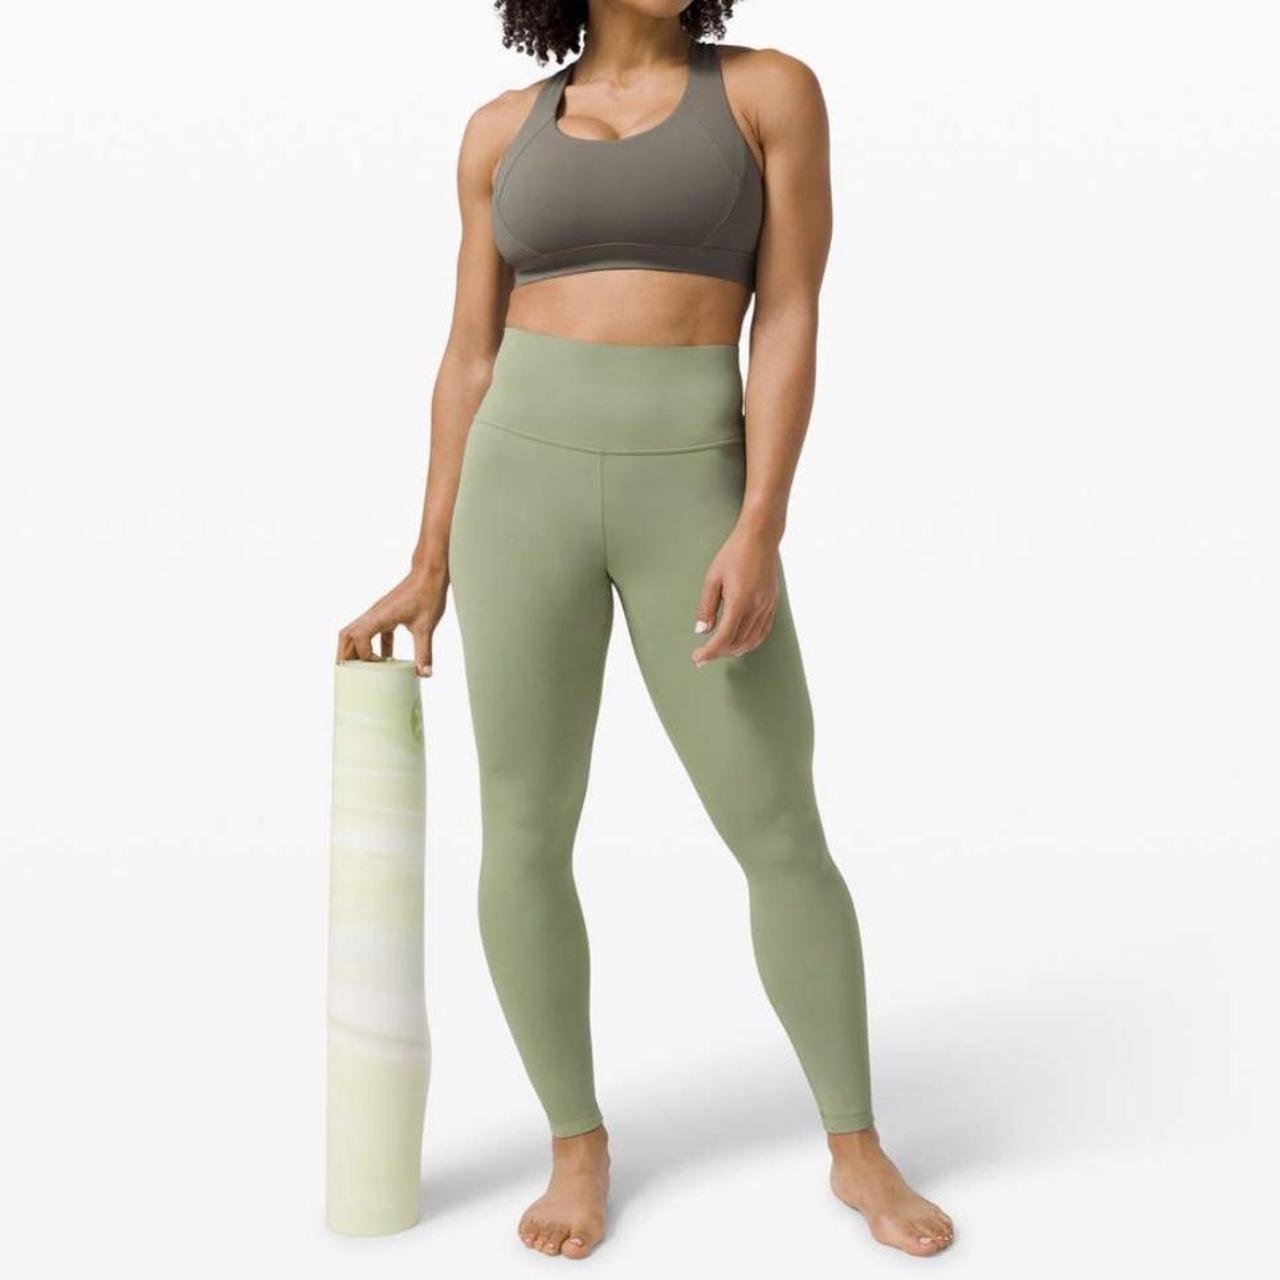 Lululemon align leggings size 0 length 25 Sold - Depop